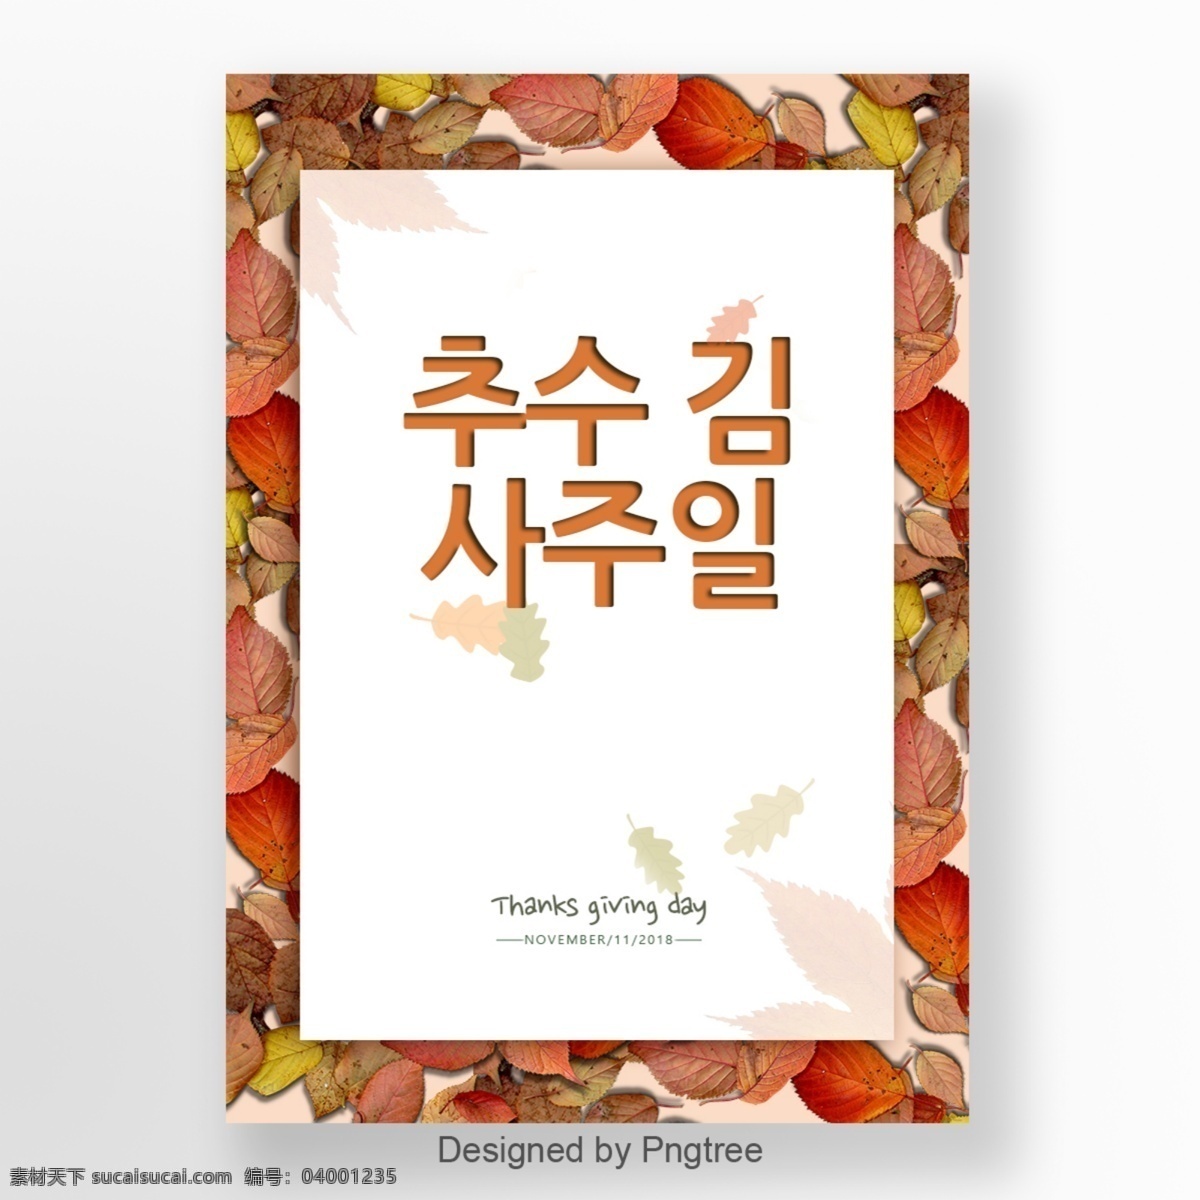 韩国 感恩节 海报 模板 大韩民国 红色 板型 纯色 黄色 枫叶 极简主义 白色 手绘插图 手绘字体